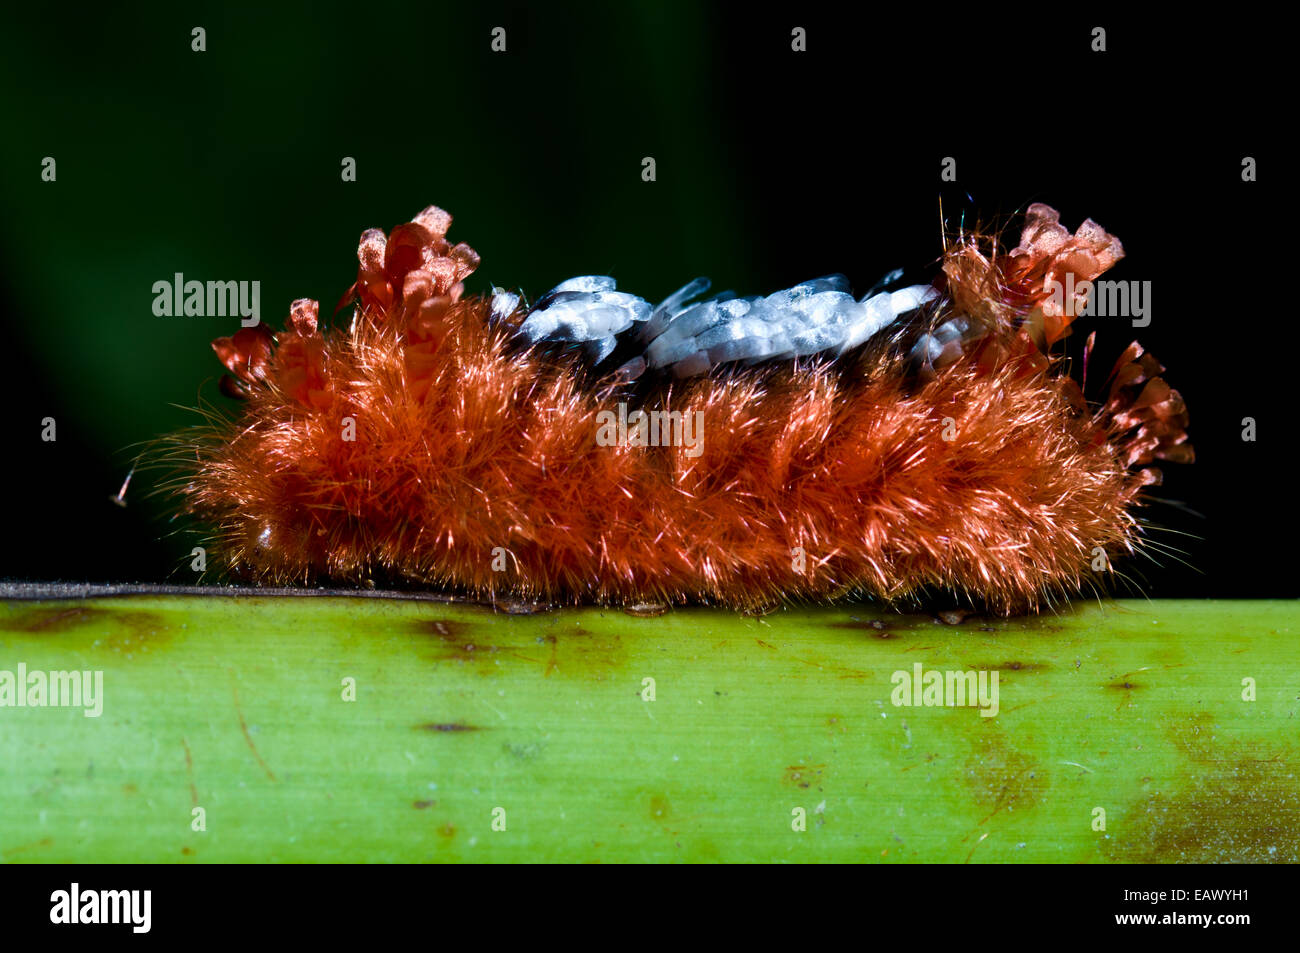 Ein Tarchon Larven von einer Motte wird durch eine dicke Schicht von giftigen Haaren geschützt. Stockfoto